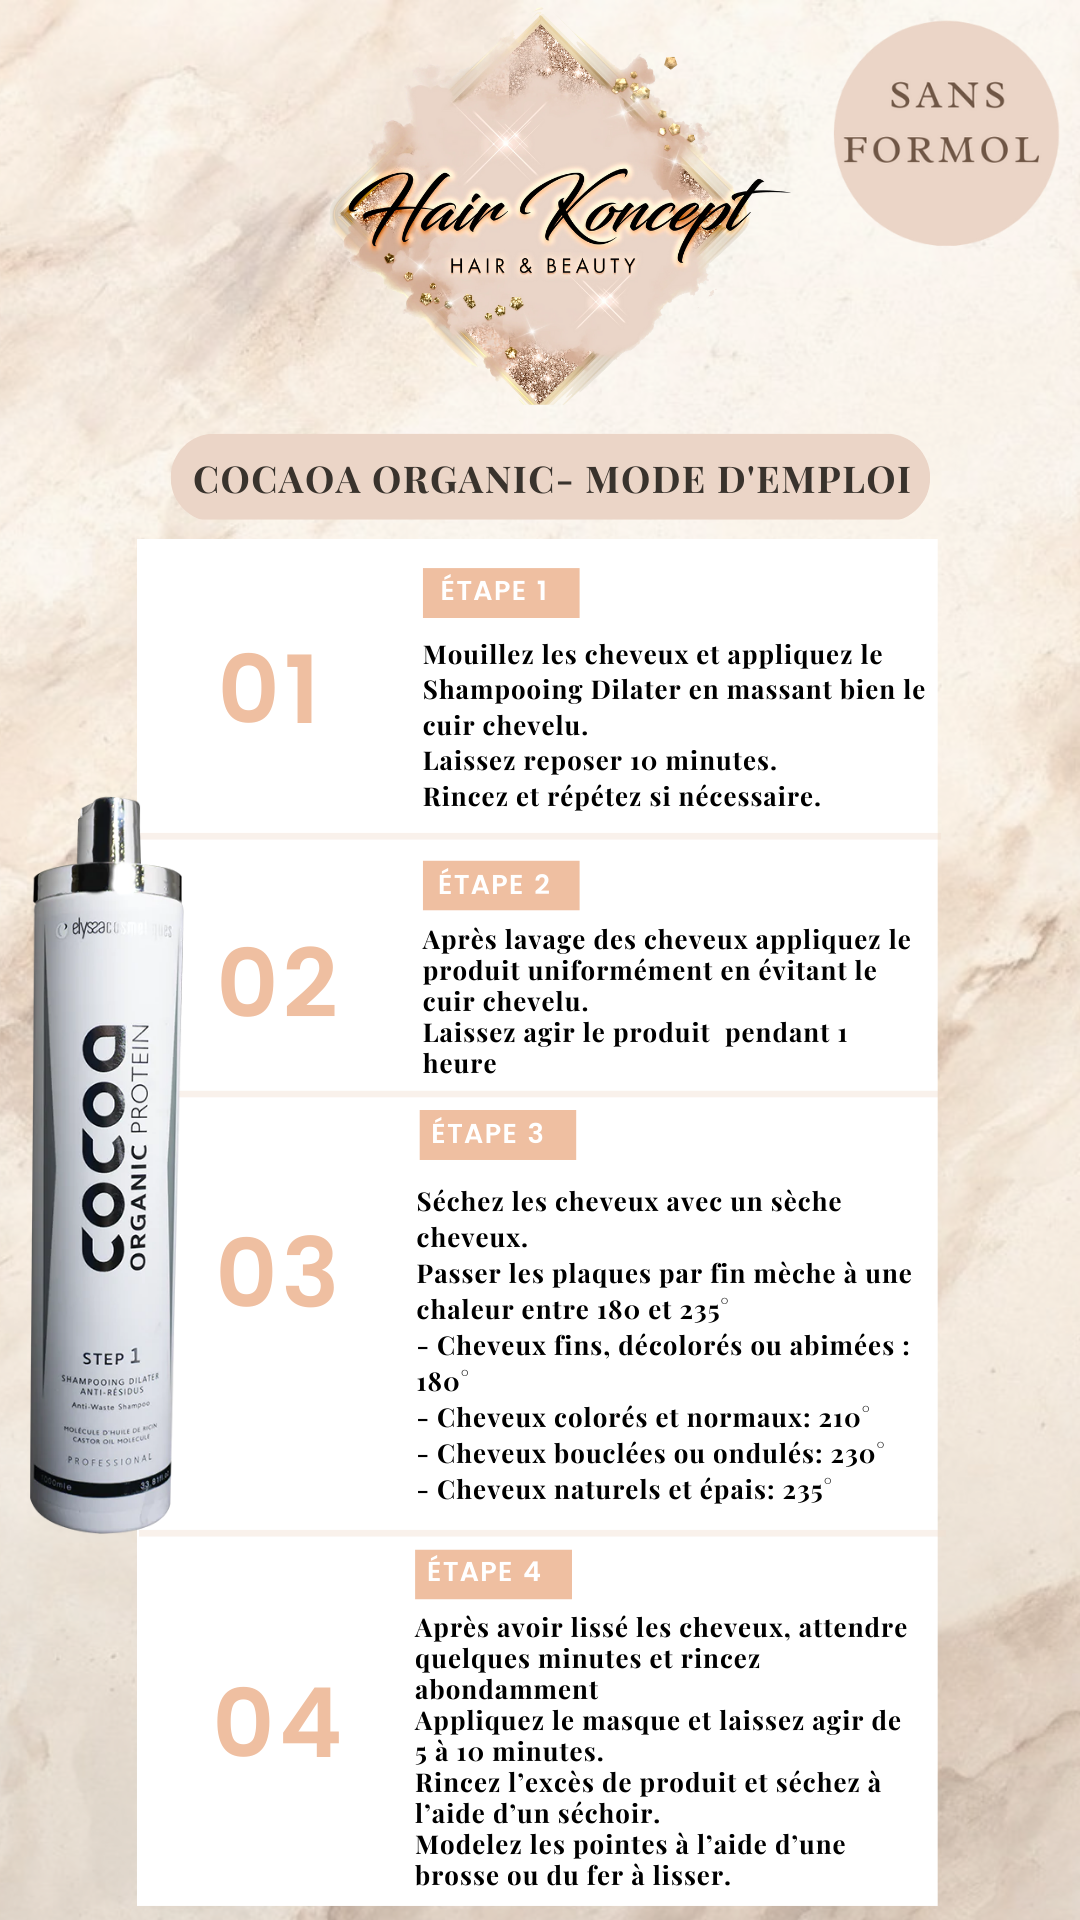 Cocoa Organic - Lissage brésilien 3x1L - Elyssa Cosmetiques